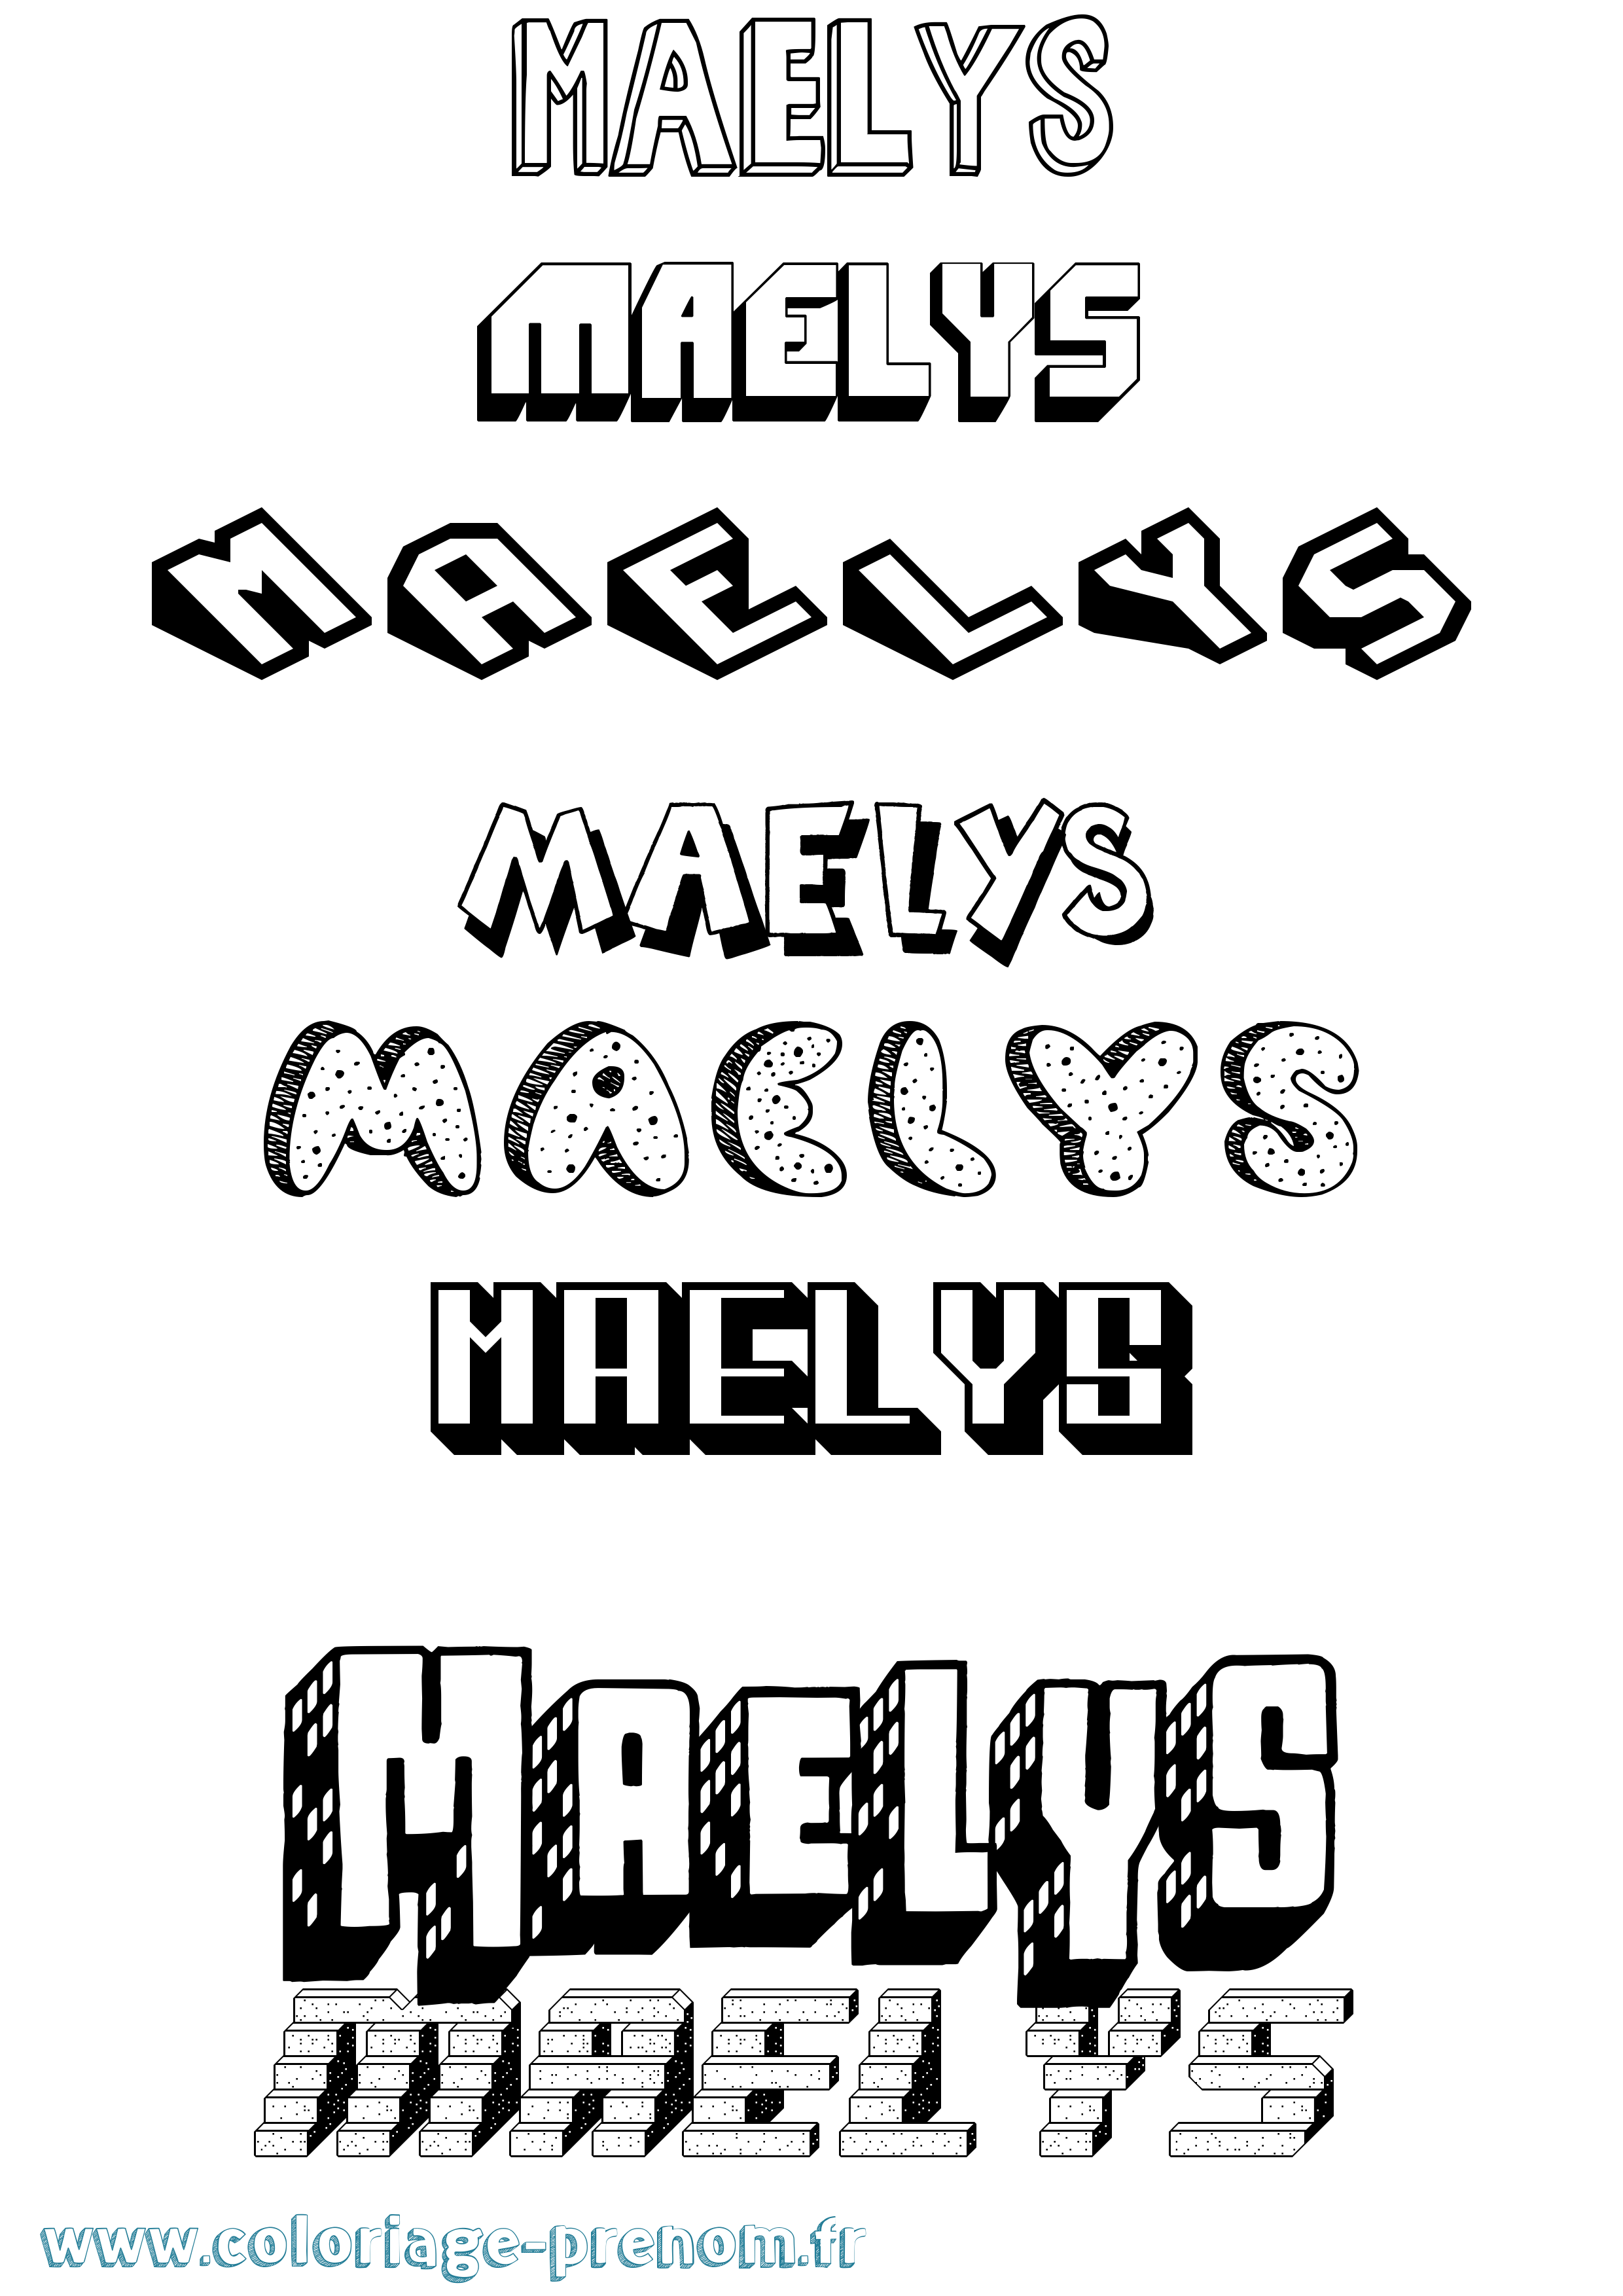 Coloriage prénom Maelys